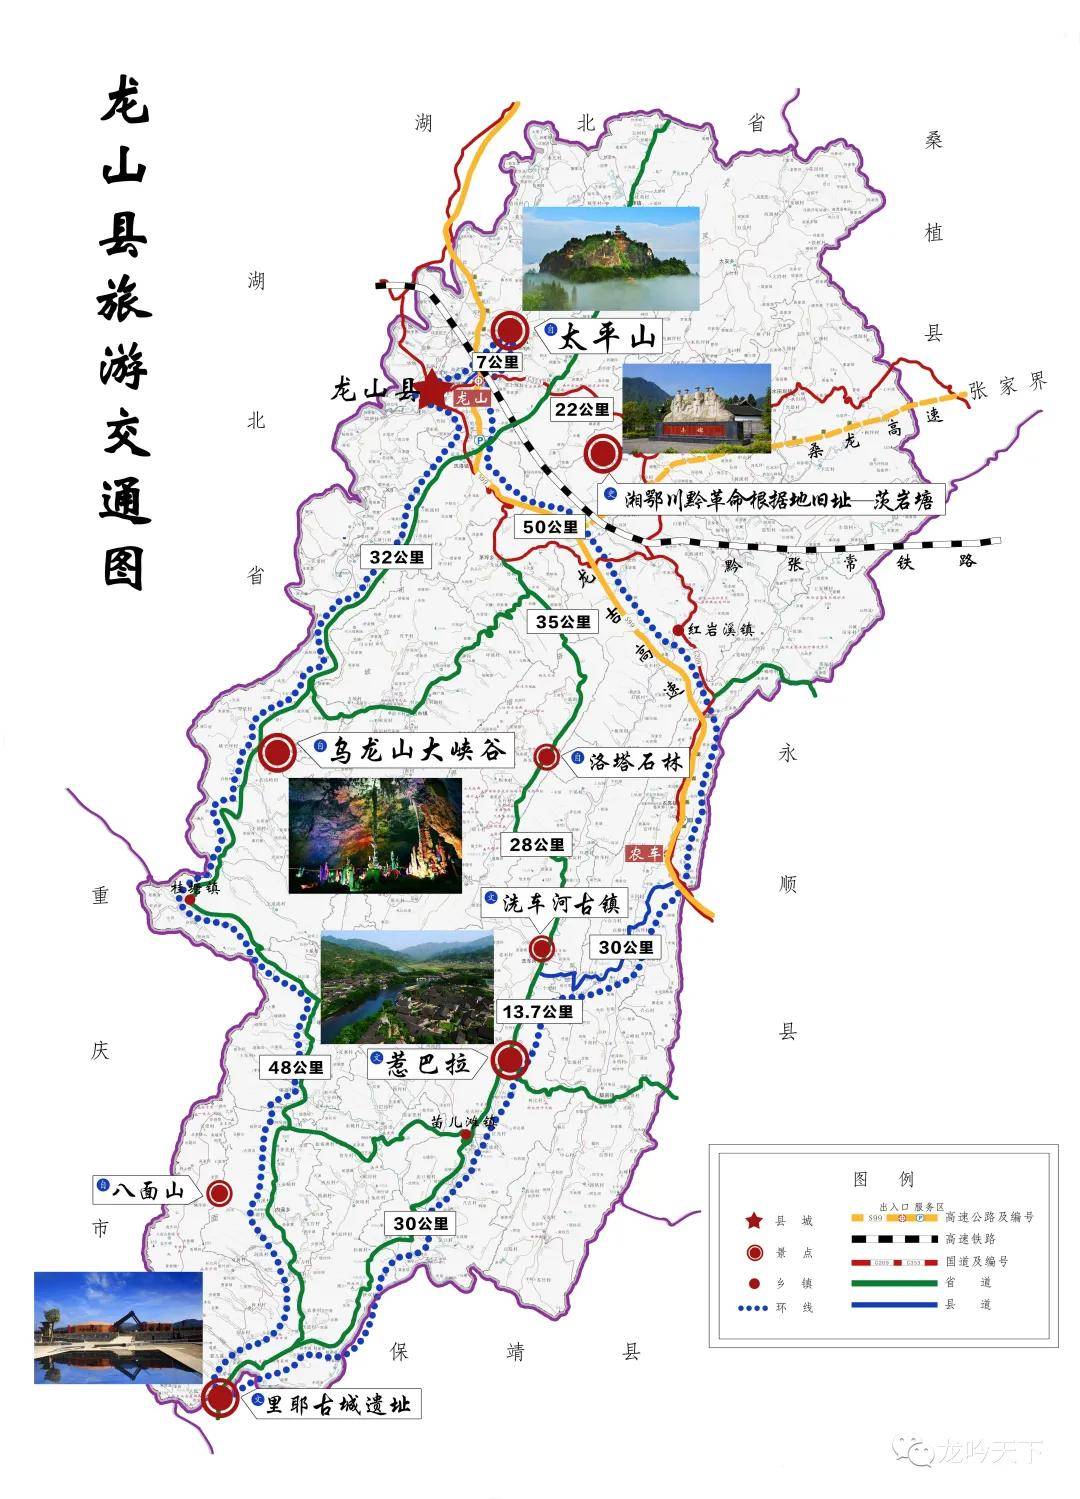 龙山县旅游交通地图(可点击放大) 作者龙颂平,湘西人,居长沙,曾为